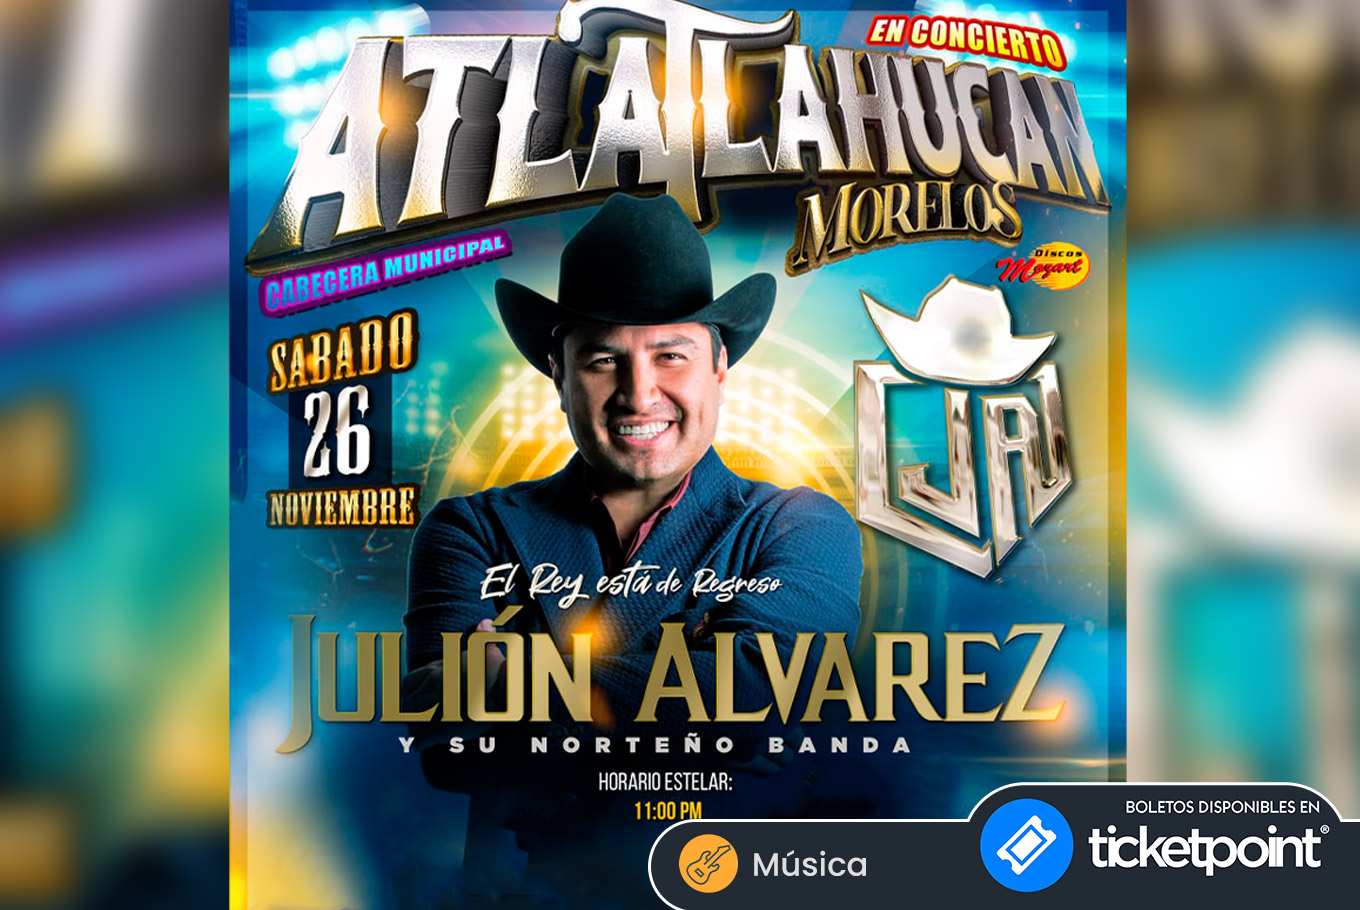 julion alvarez world tour